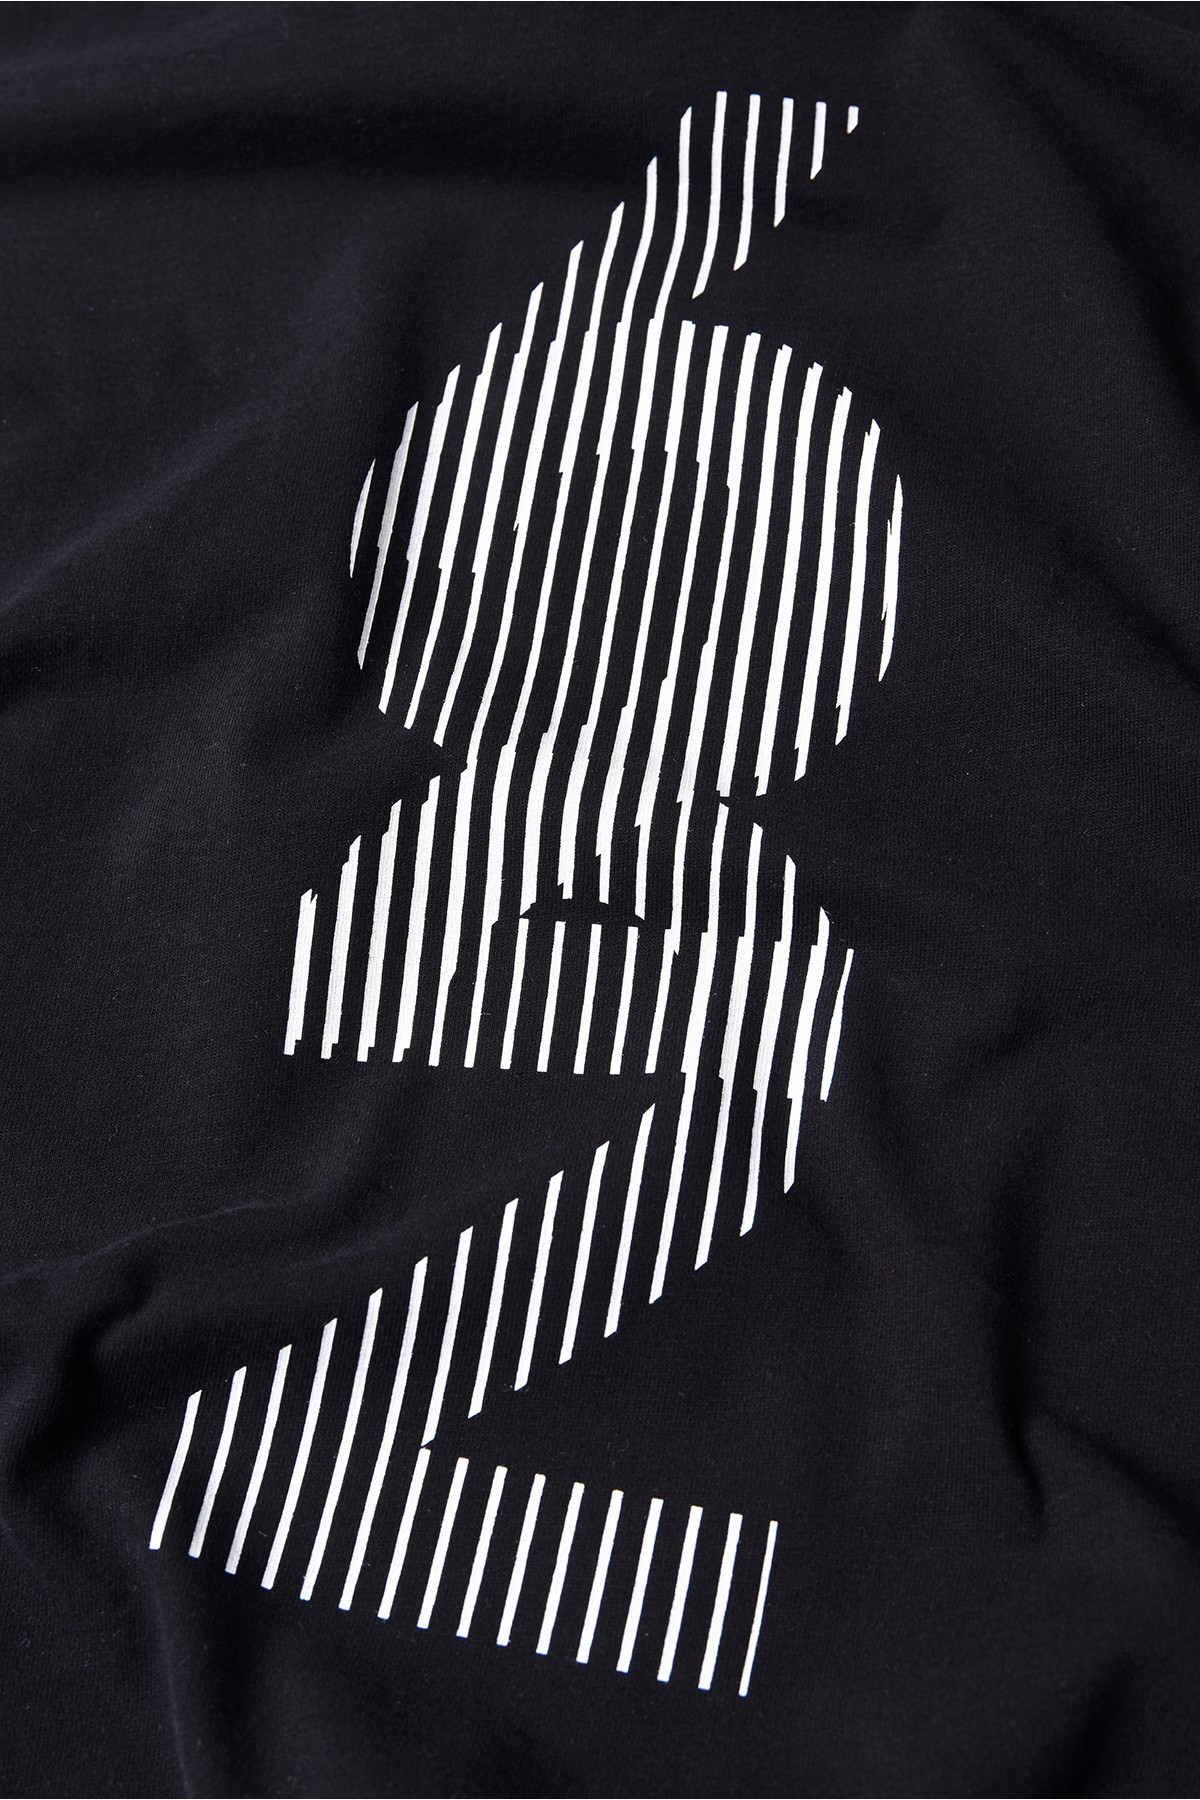 622 Tasarım Pamuk Siyah T-shirt